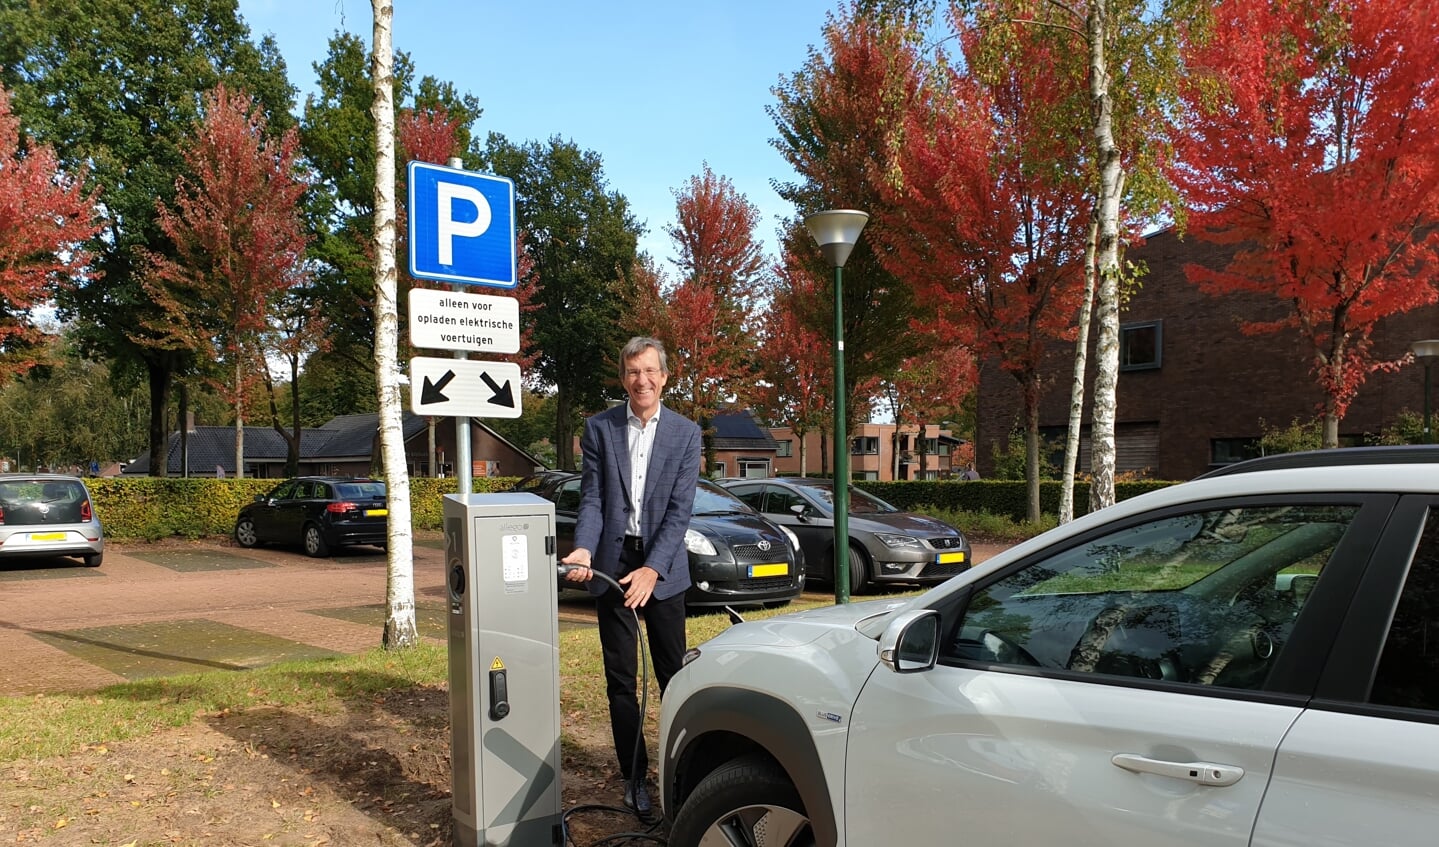 Wethouder Co Lambert plugt de eerste elektrische auto in op de parkeerplaats bij het gemeentehuis in Gieten. (foto: gemeente Aa en Hunze)